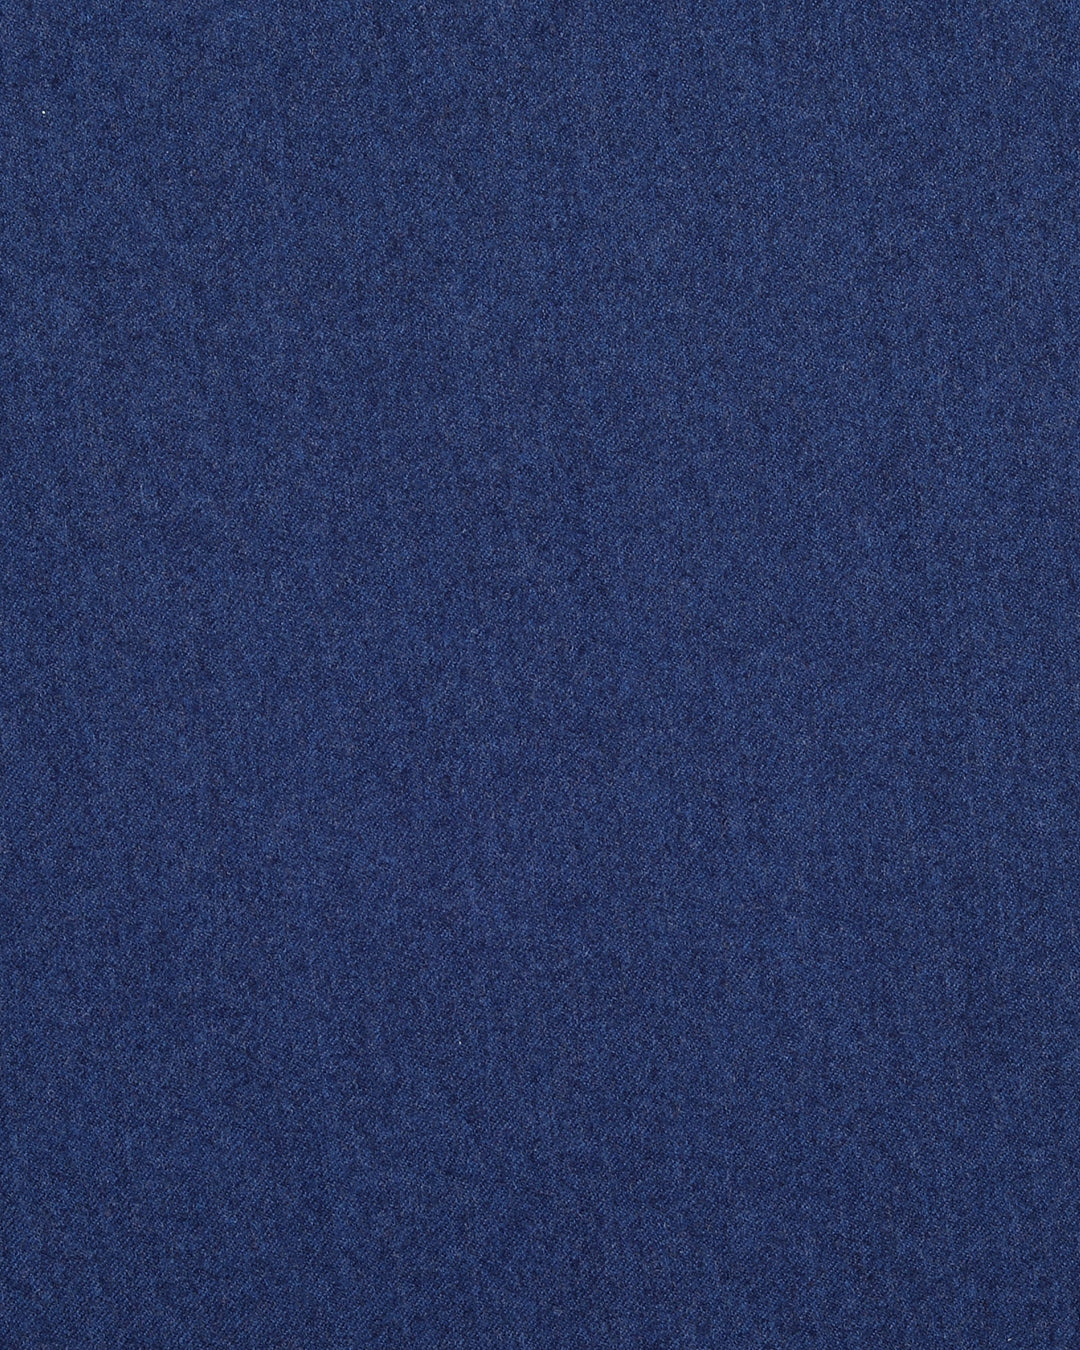 Vitale Barberis Canonico - Flannels  Sapphire Blue